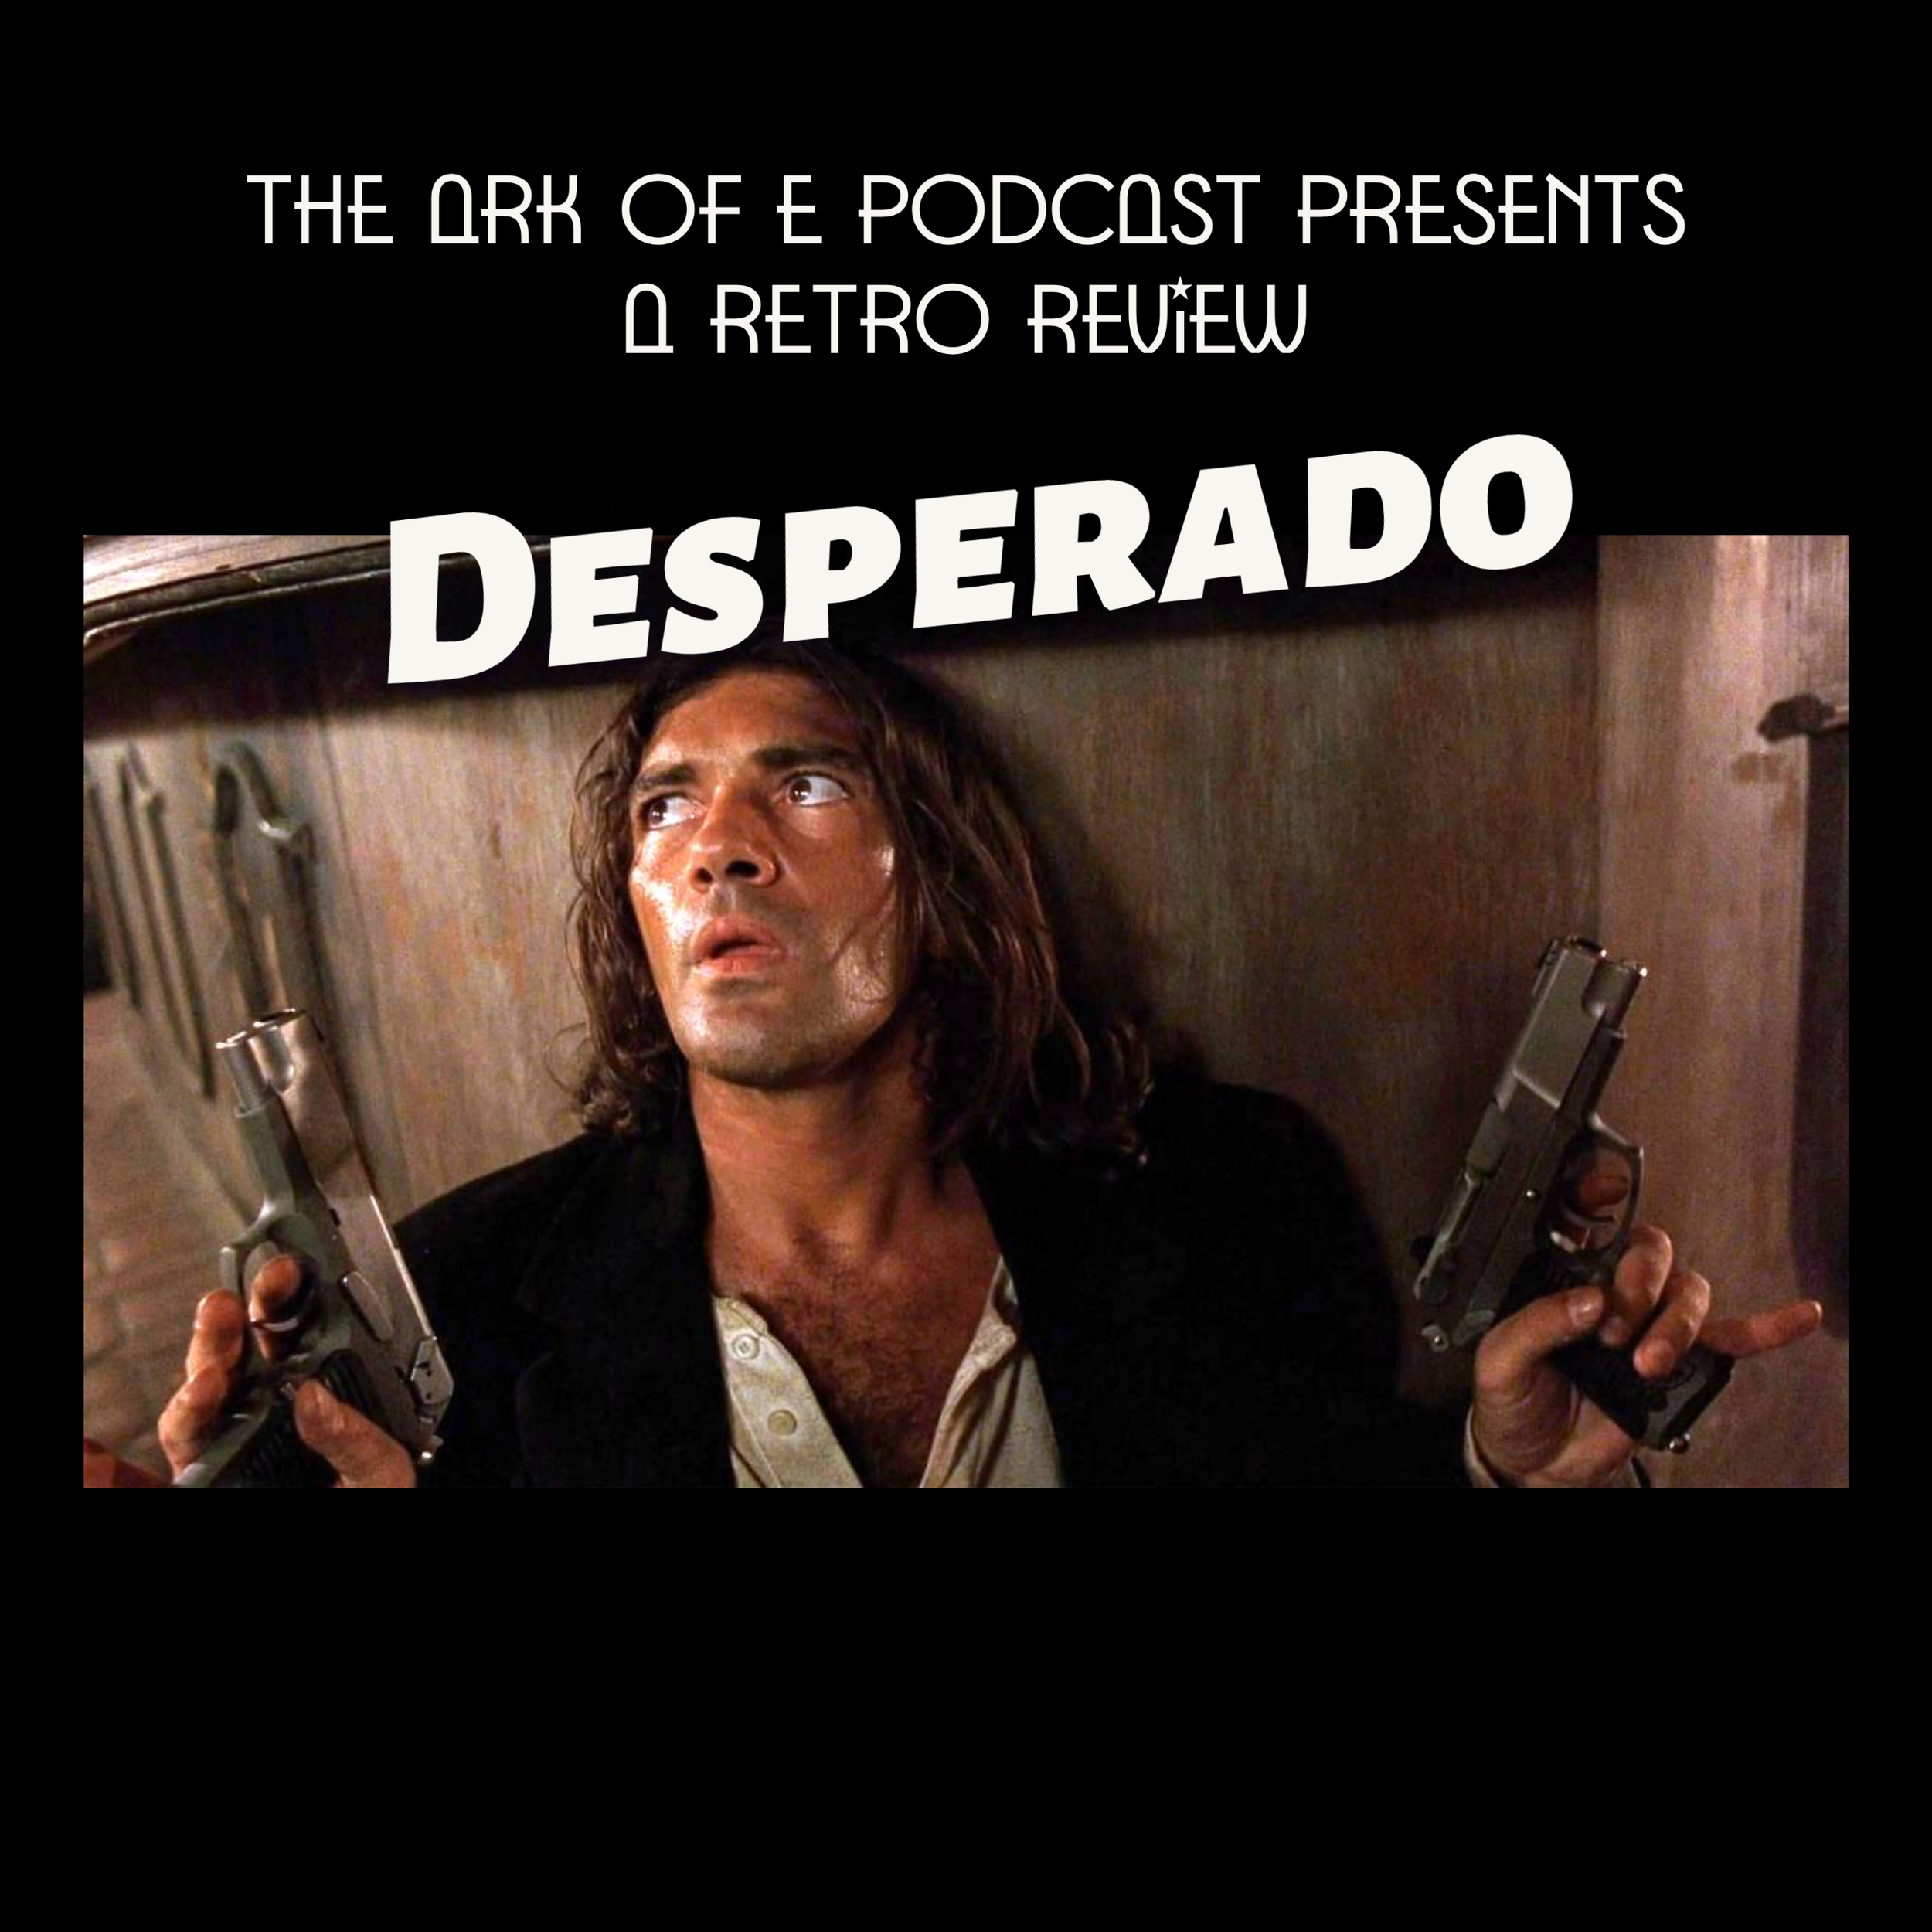 Desperado Review